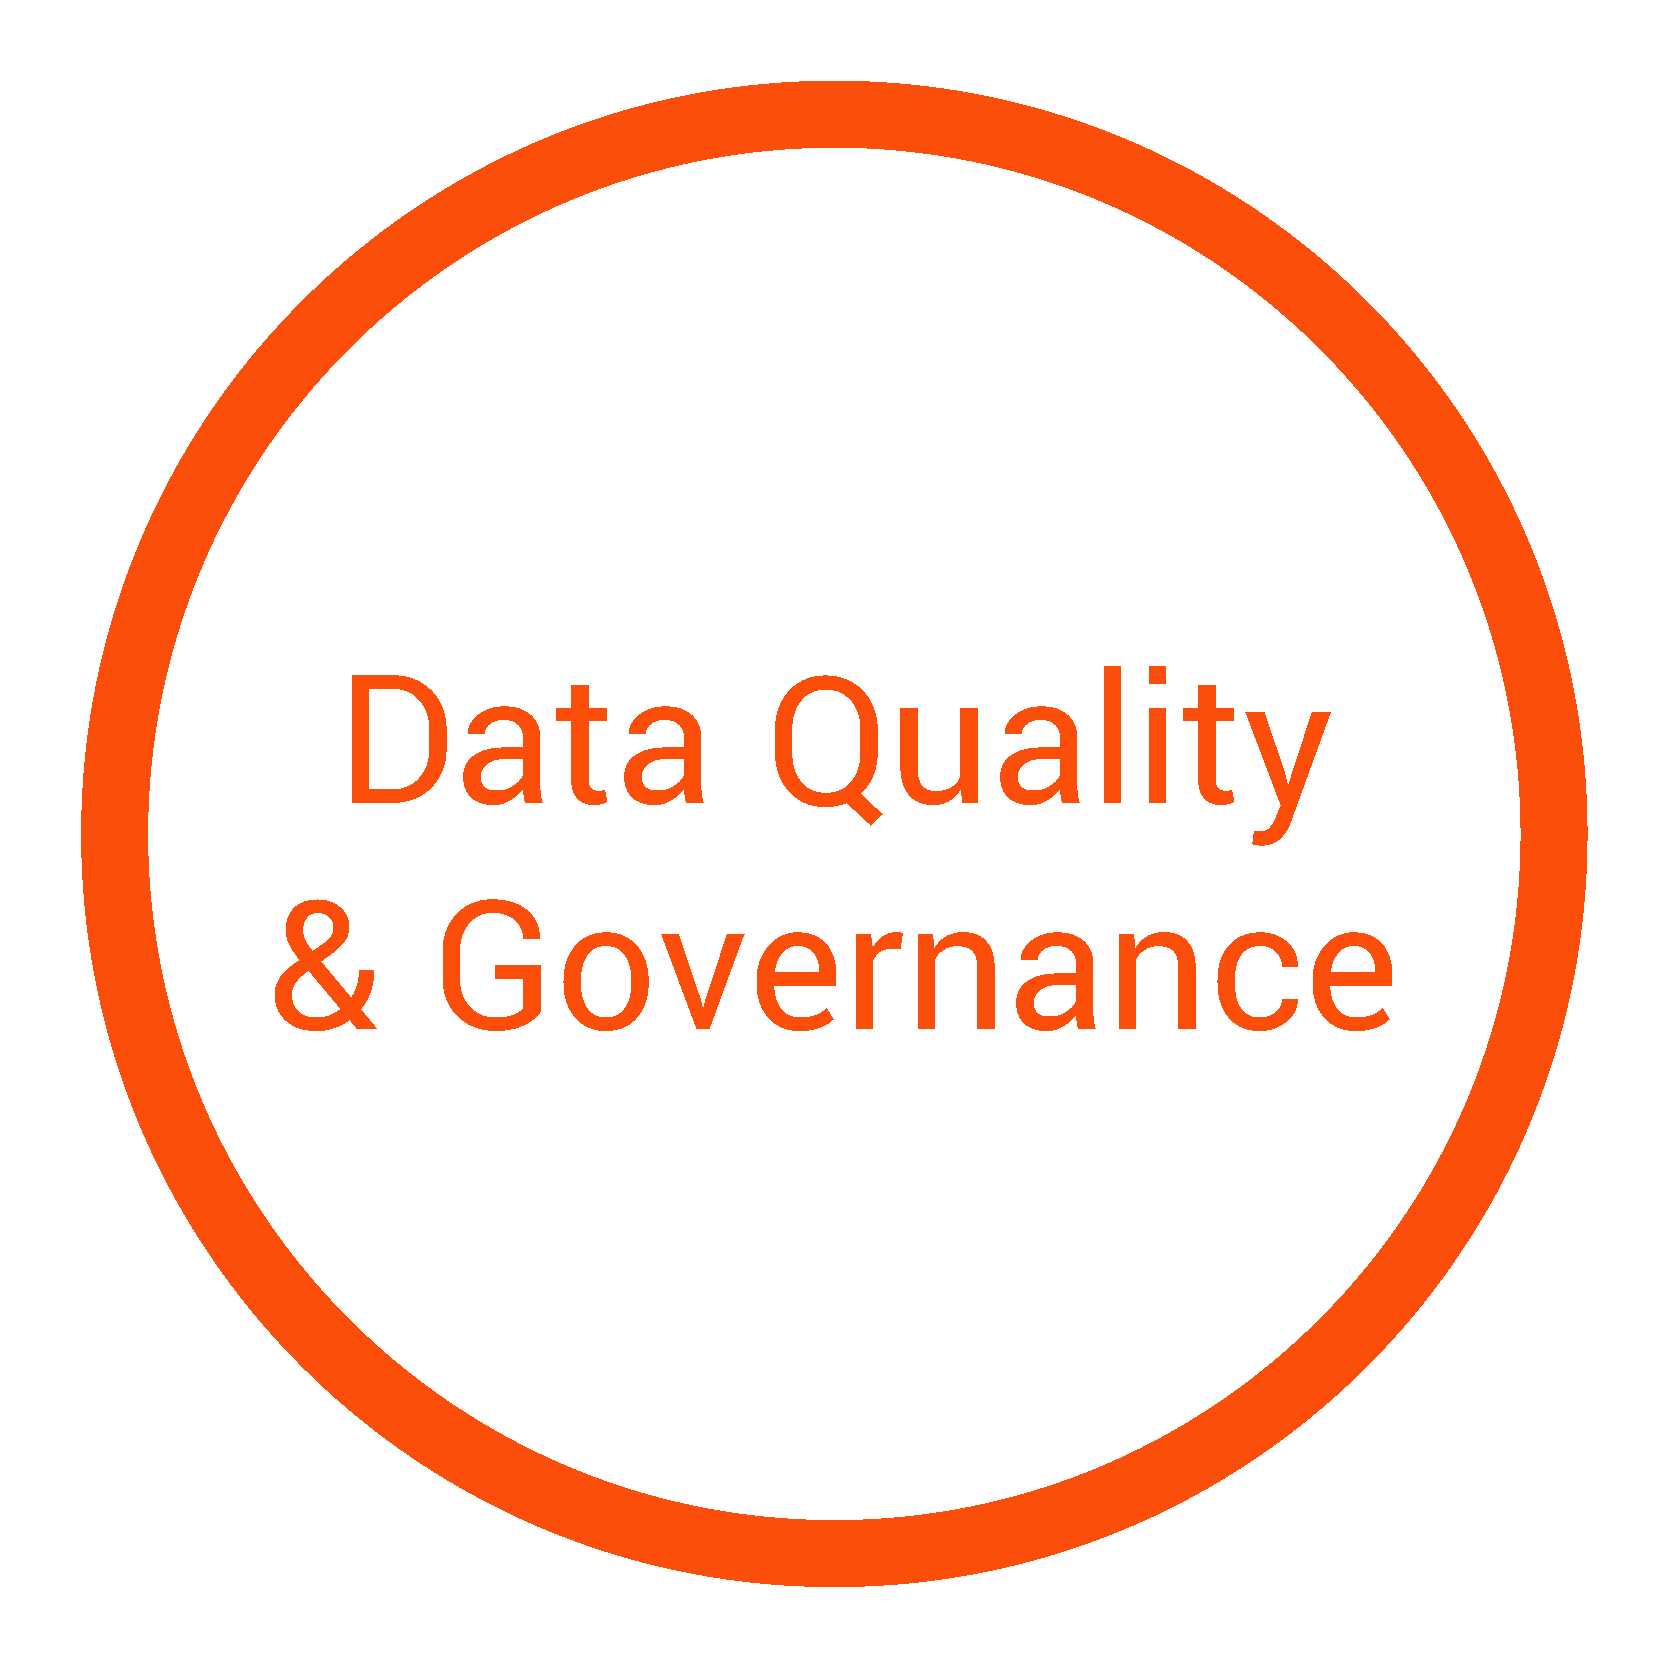 Data Quality & Governance